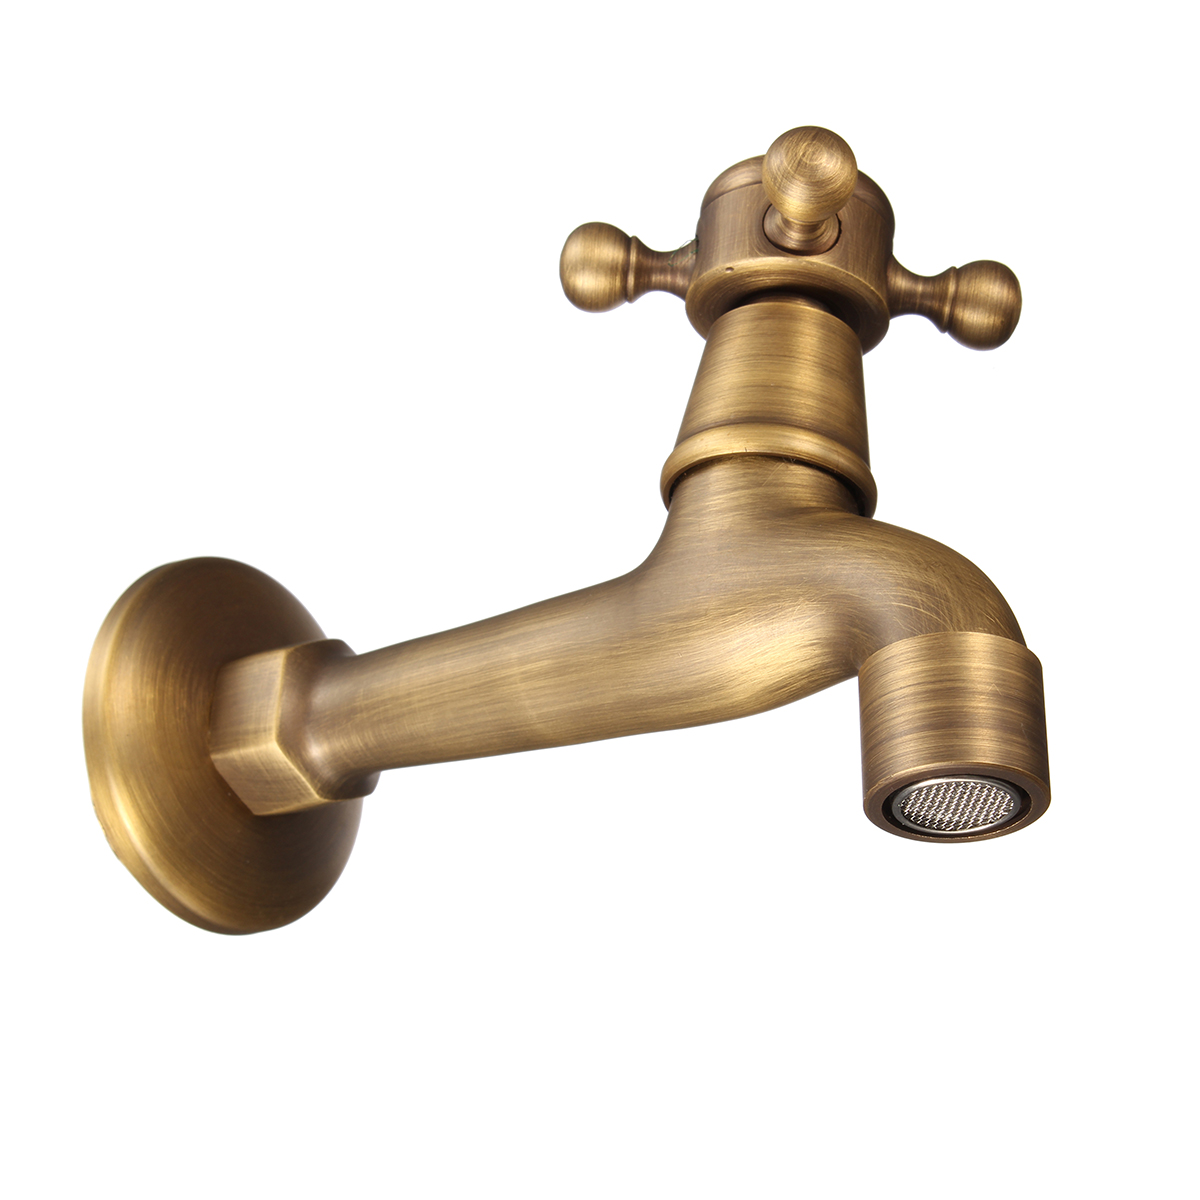 Antique-Brass-Wall-Mounted-Garden-Bathroom-Basin-Faucet-Mop-Water-Machine-Tap-1138134